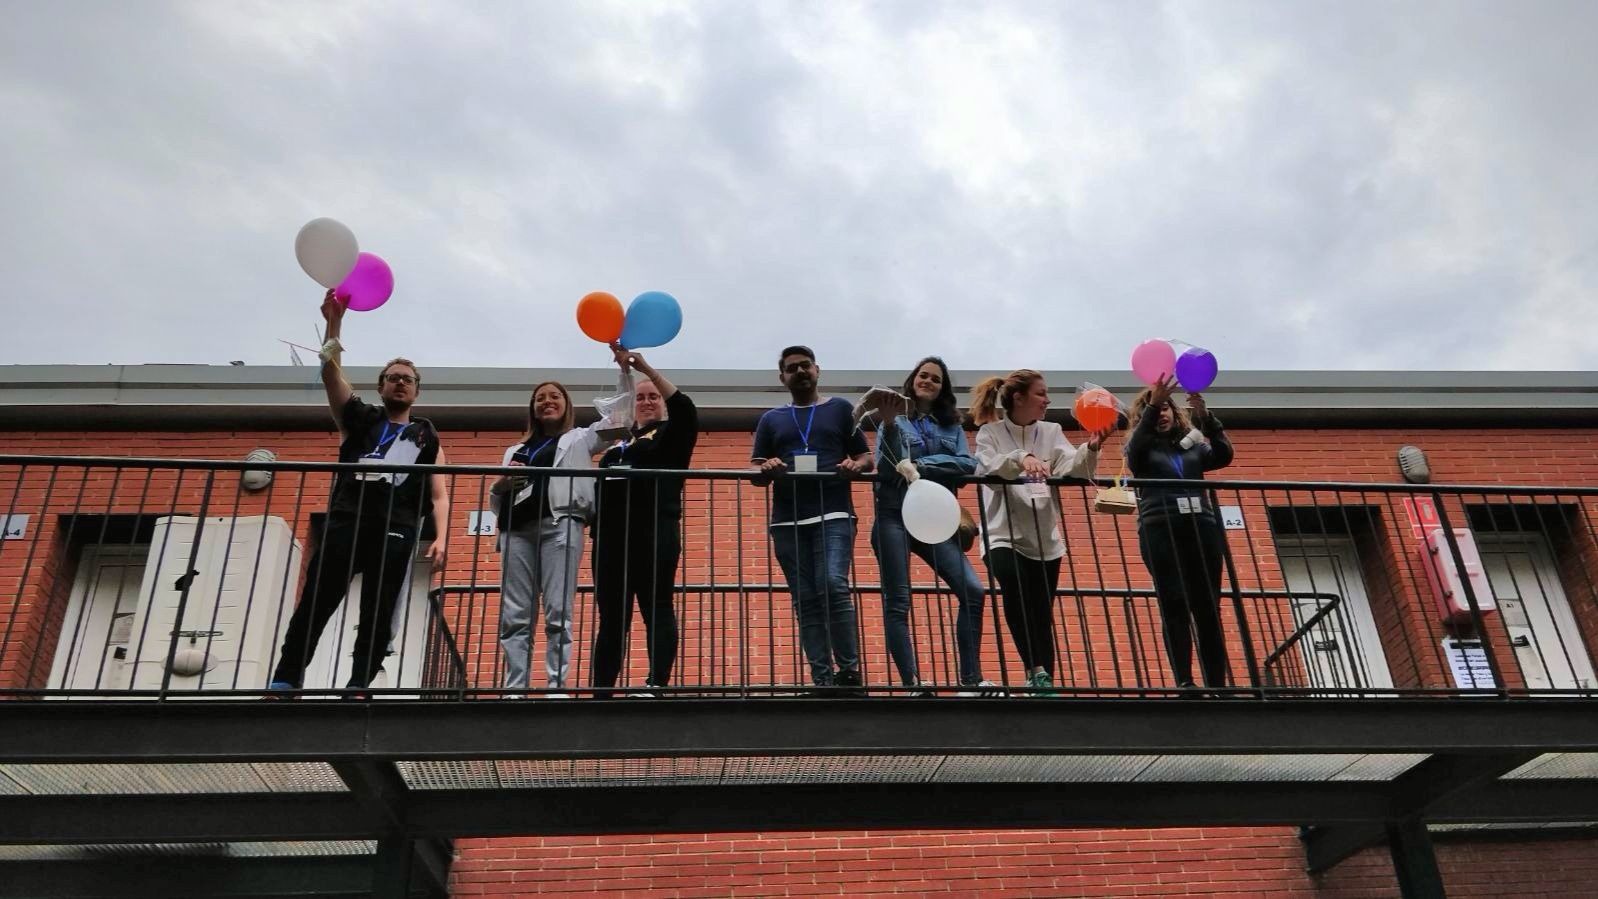 Can Europa 2018 une a más de 200 estudiantes de FP para preparar su experiencia Erasmus